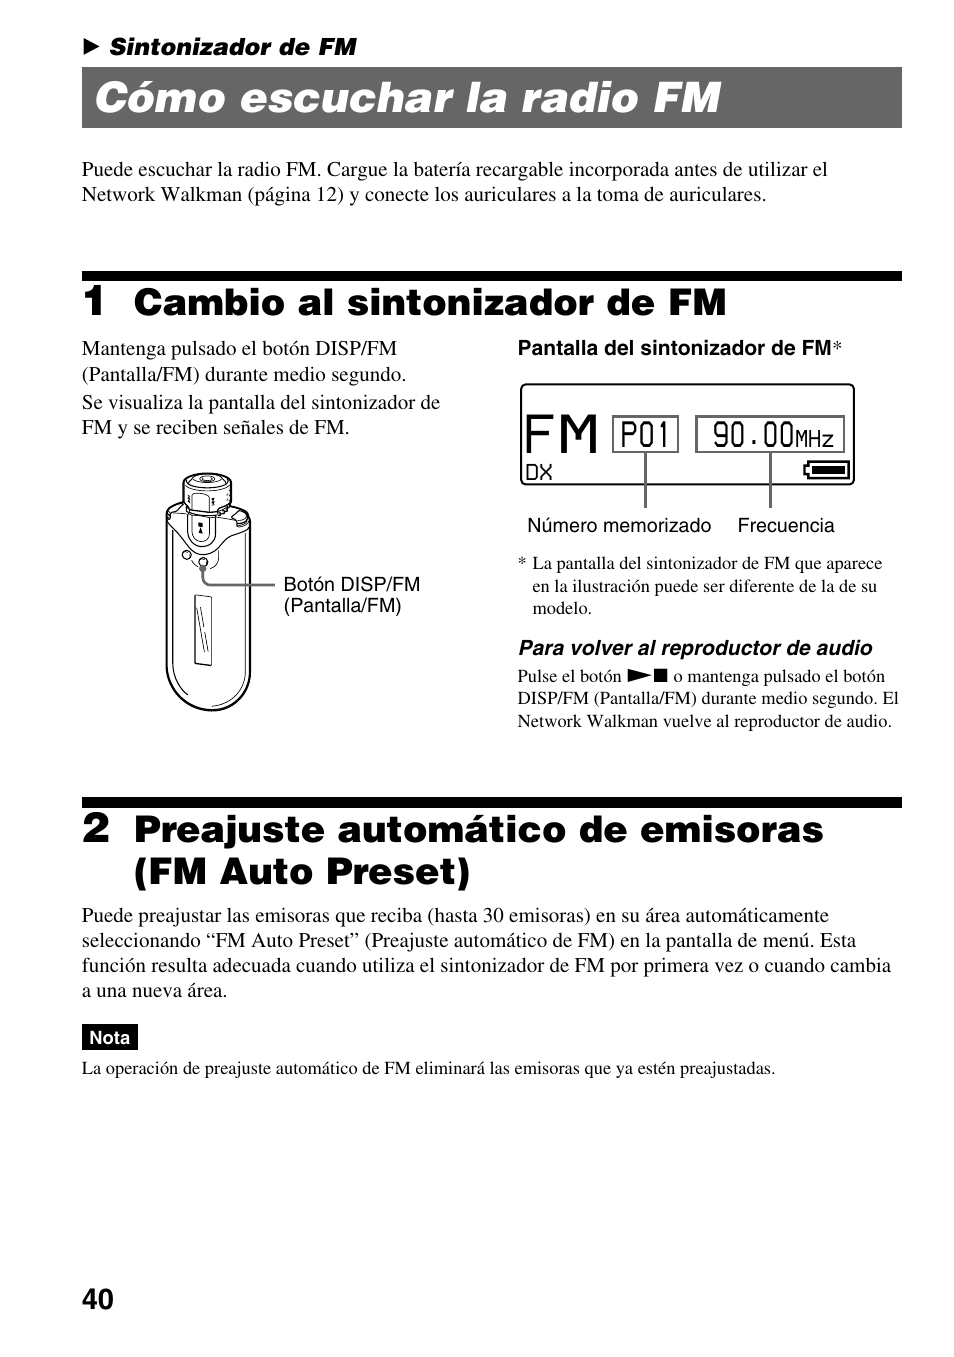 Sintonizador de fm, Cómo escuchar la radio fm, Cambio al sintonizador de fm | Preajuste automático de emisoras (fm auto preset), Fm auto preset) | Sony NW-E503 Manual del usuario | Página 40 / 59